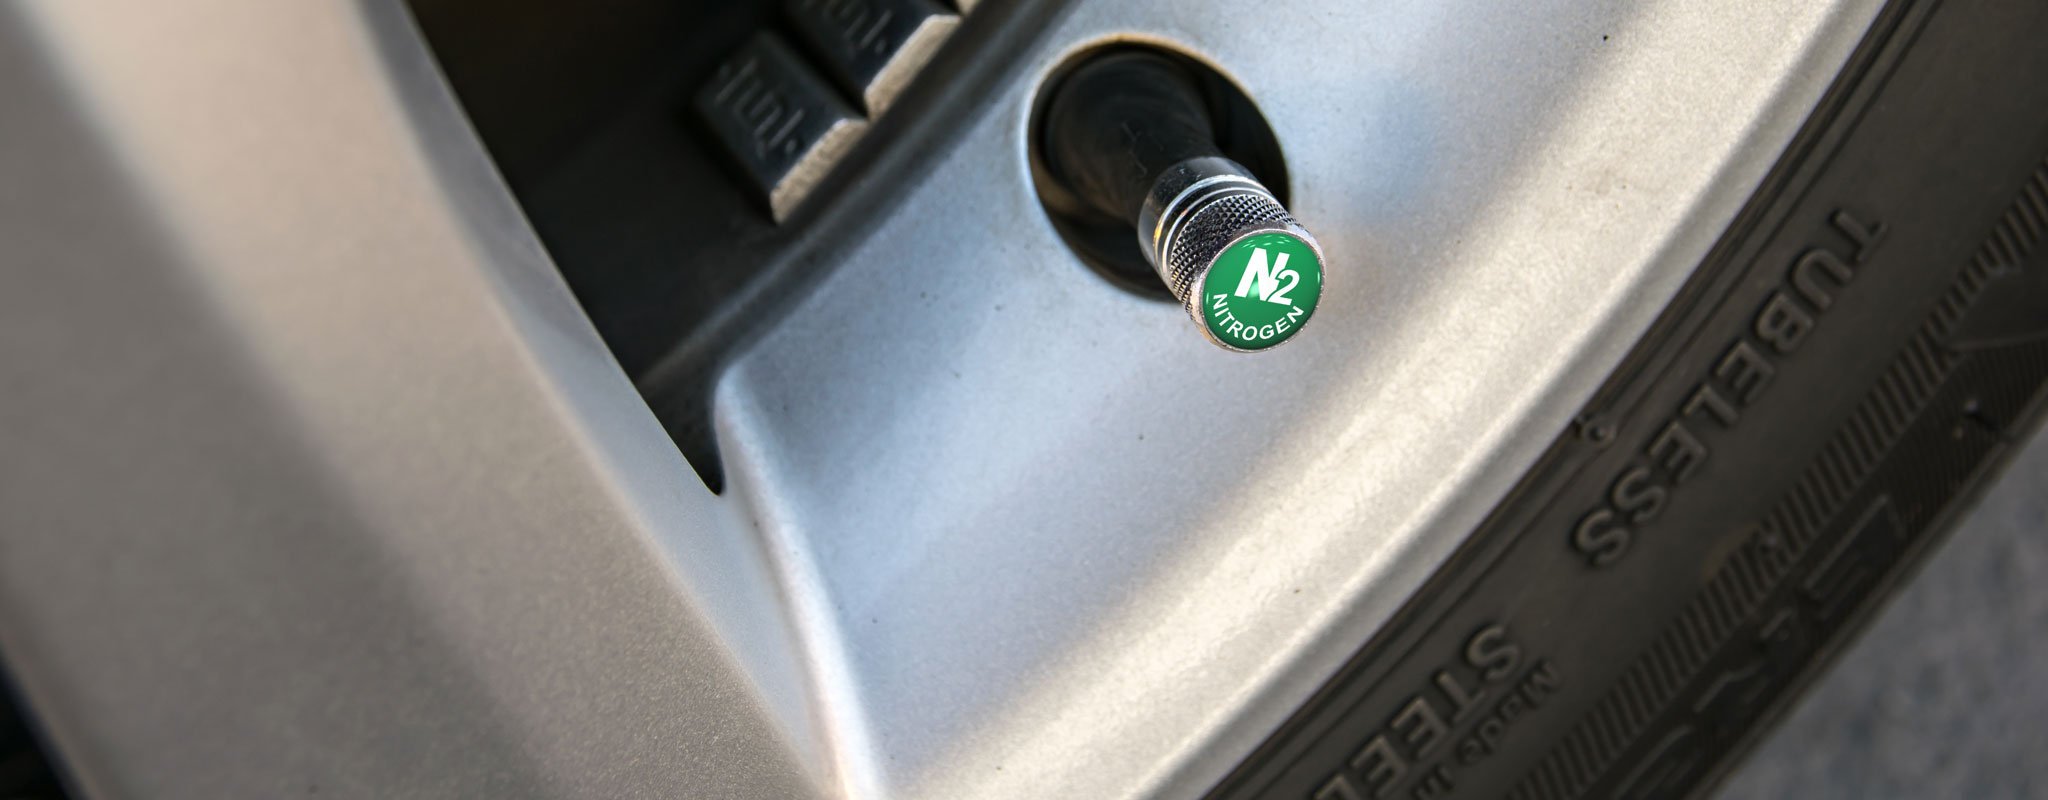 A green valve stem cap indicating Nitrogen filled.